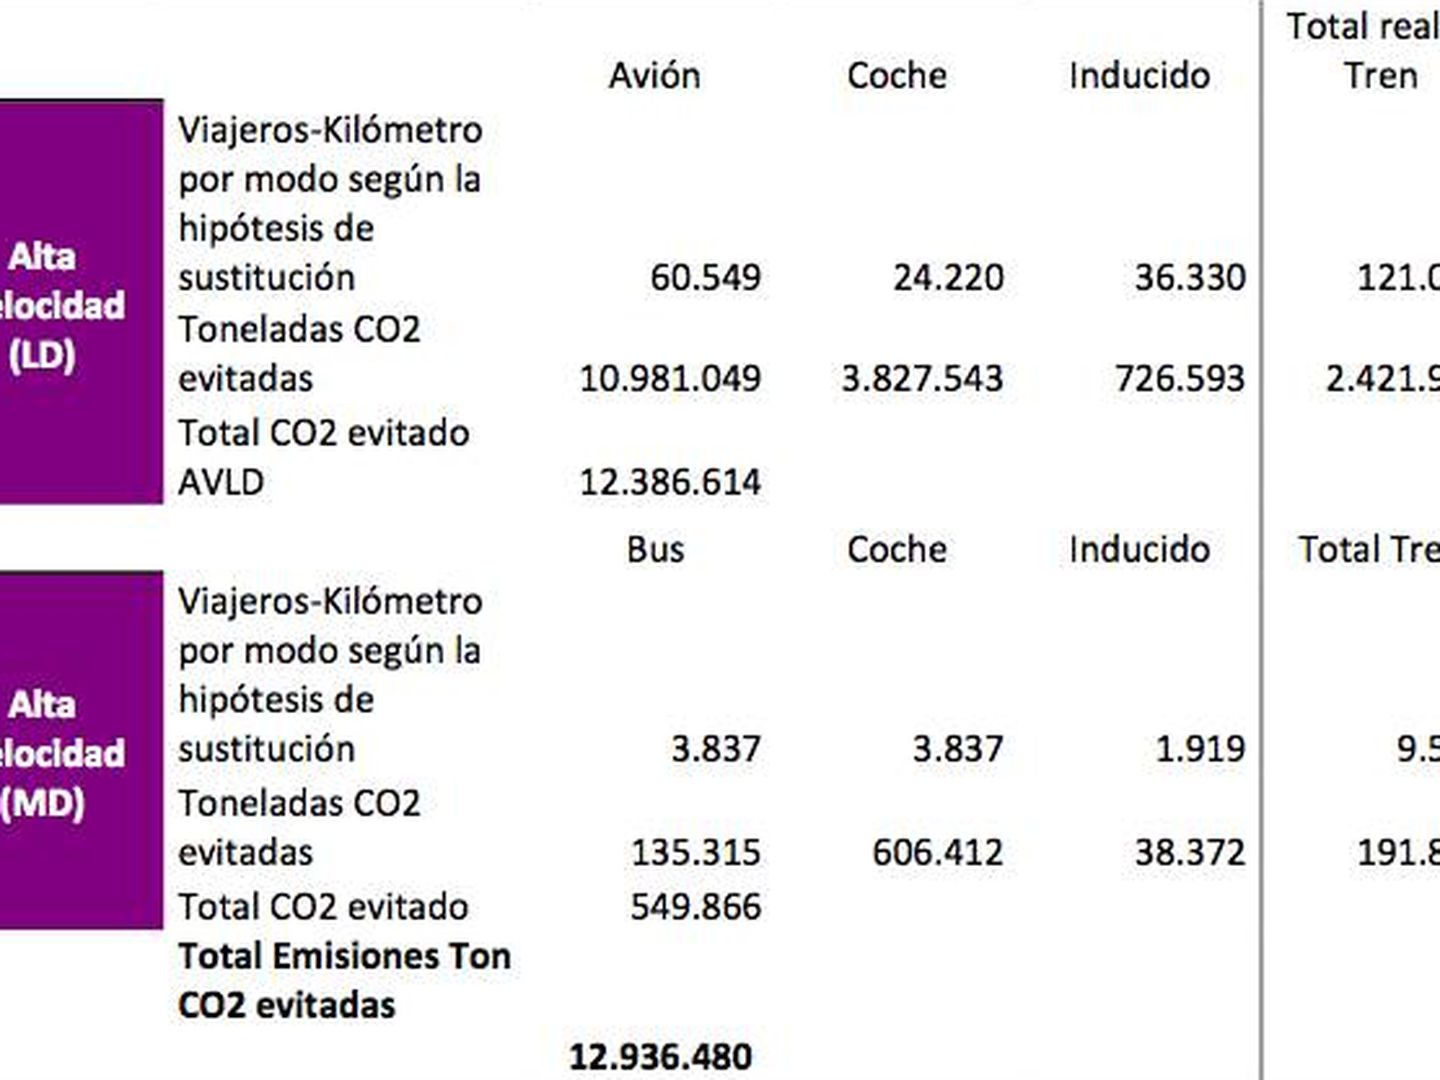 Resumen de ahorro estimado de emisiones de CO2 en los Servicios Alta Velocidad (1992-2016). Fuente: Renfe.